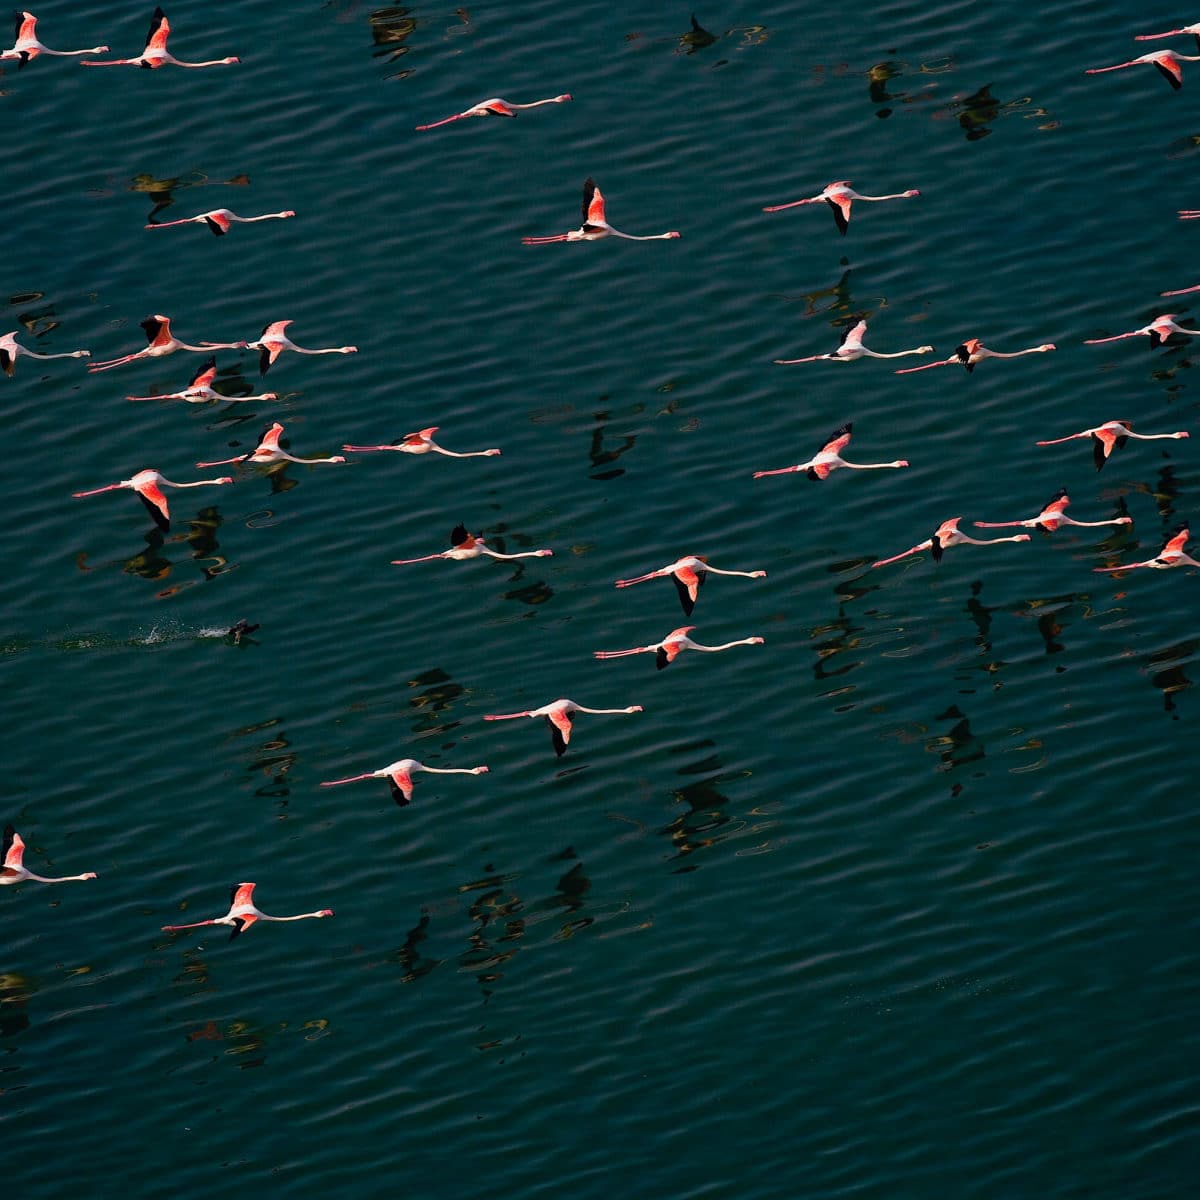 Vol de flamants roses sur le lac SaLé al Jabboul à L’est d’Alep, Syrie. (36°04’ N - 37°29’ E)